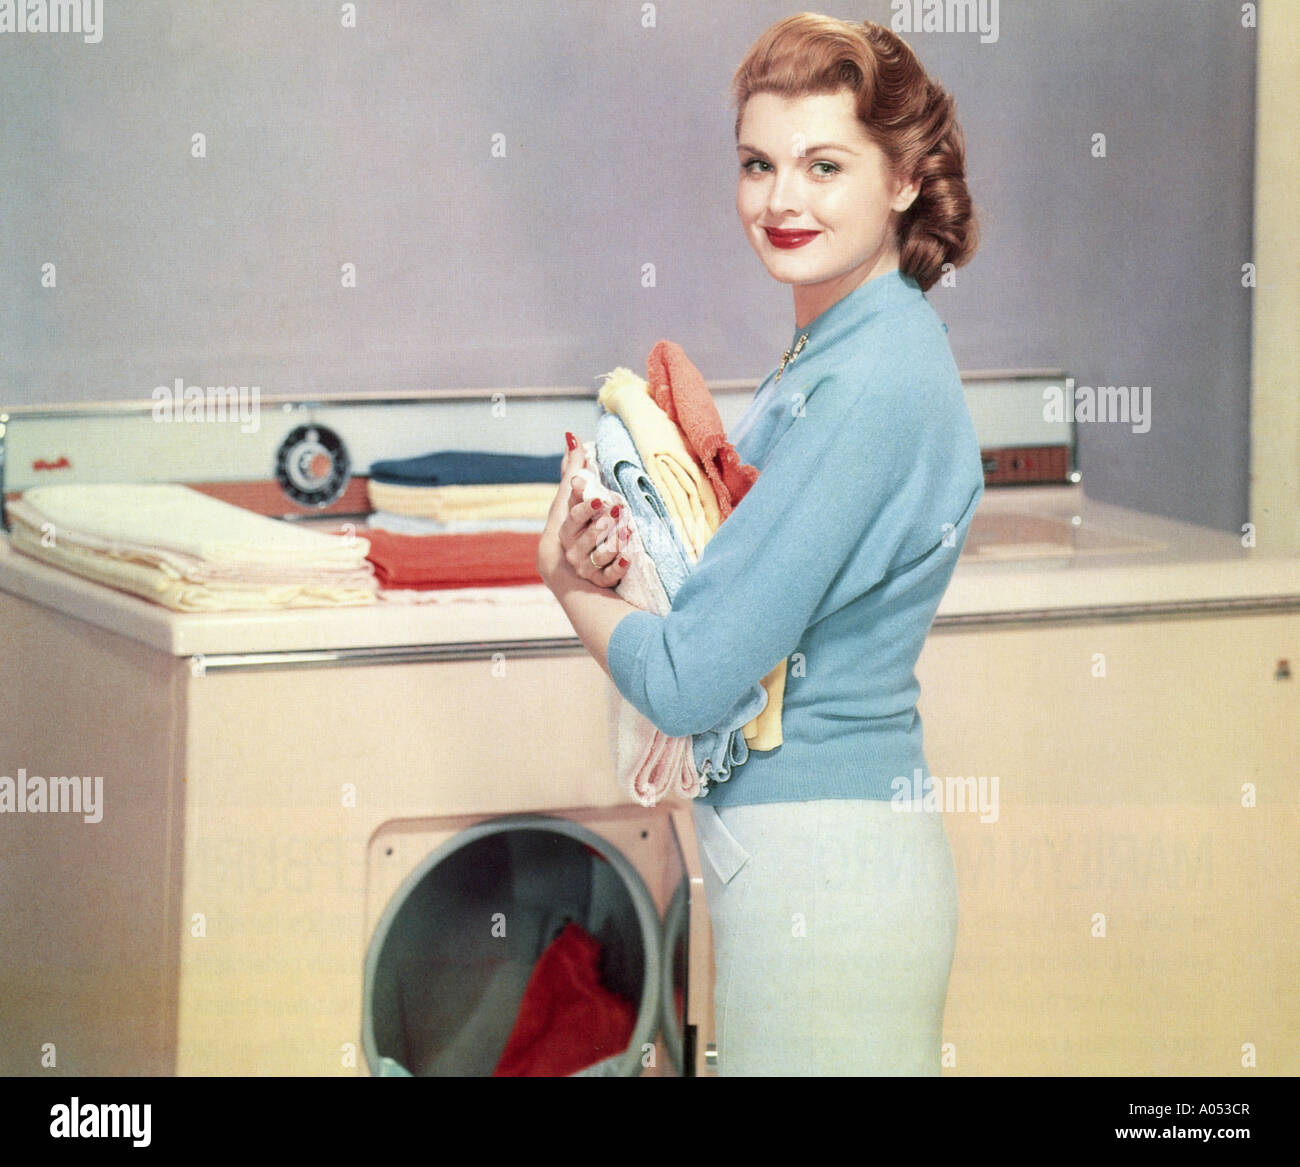 Maschine Der 1960er Jahre Stockfotos und -bilder Kaufen - Alamy